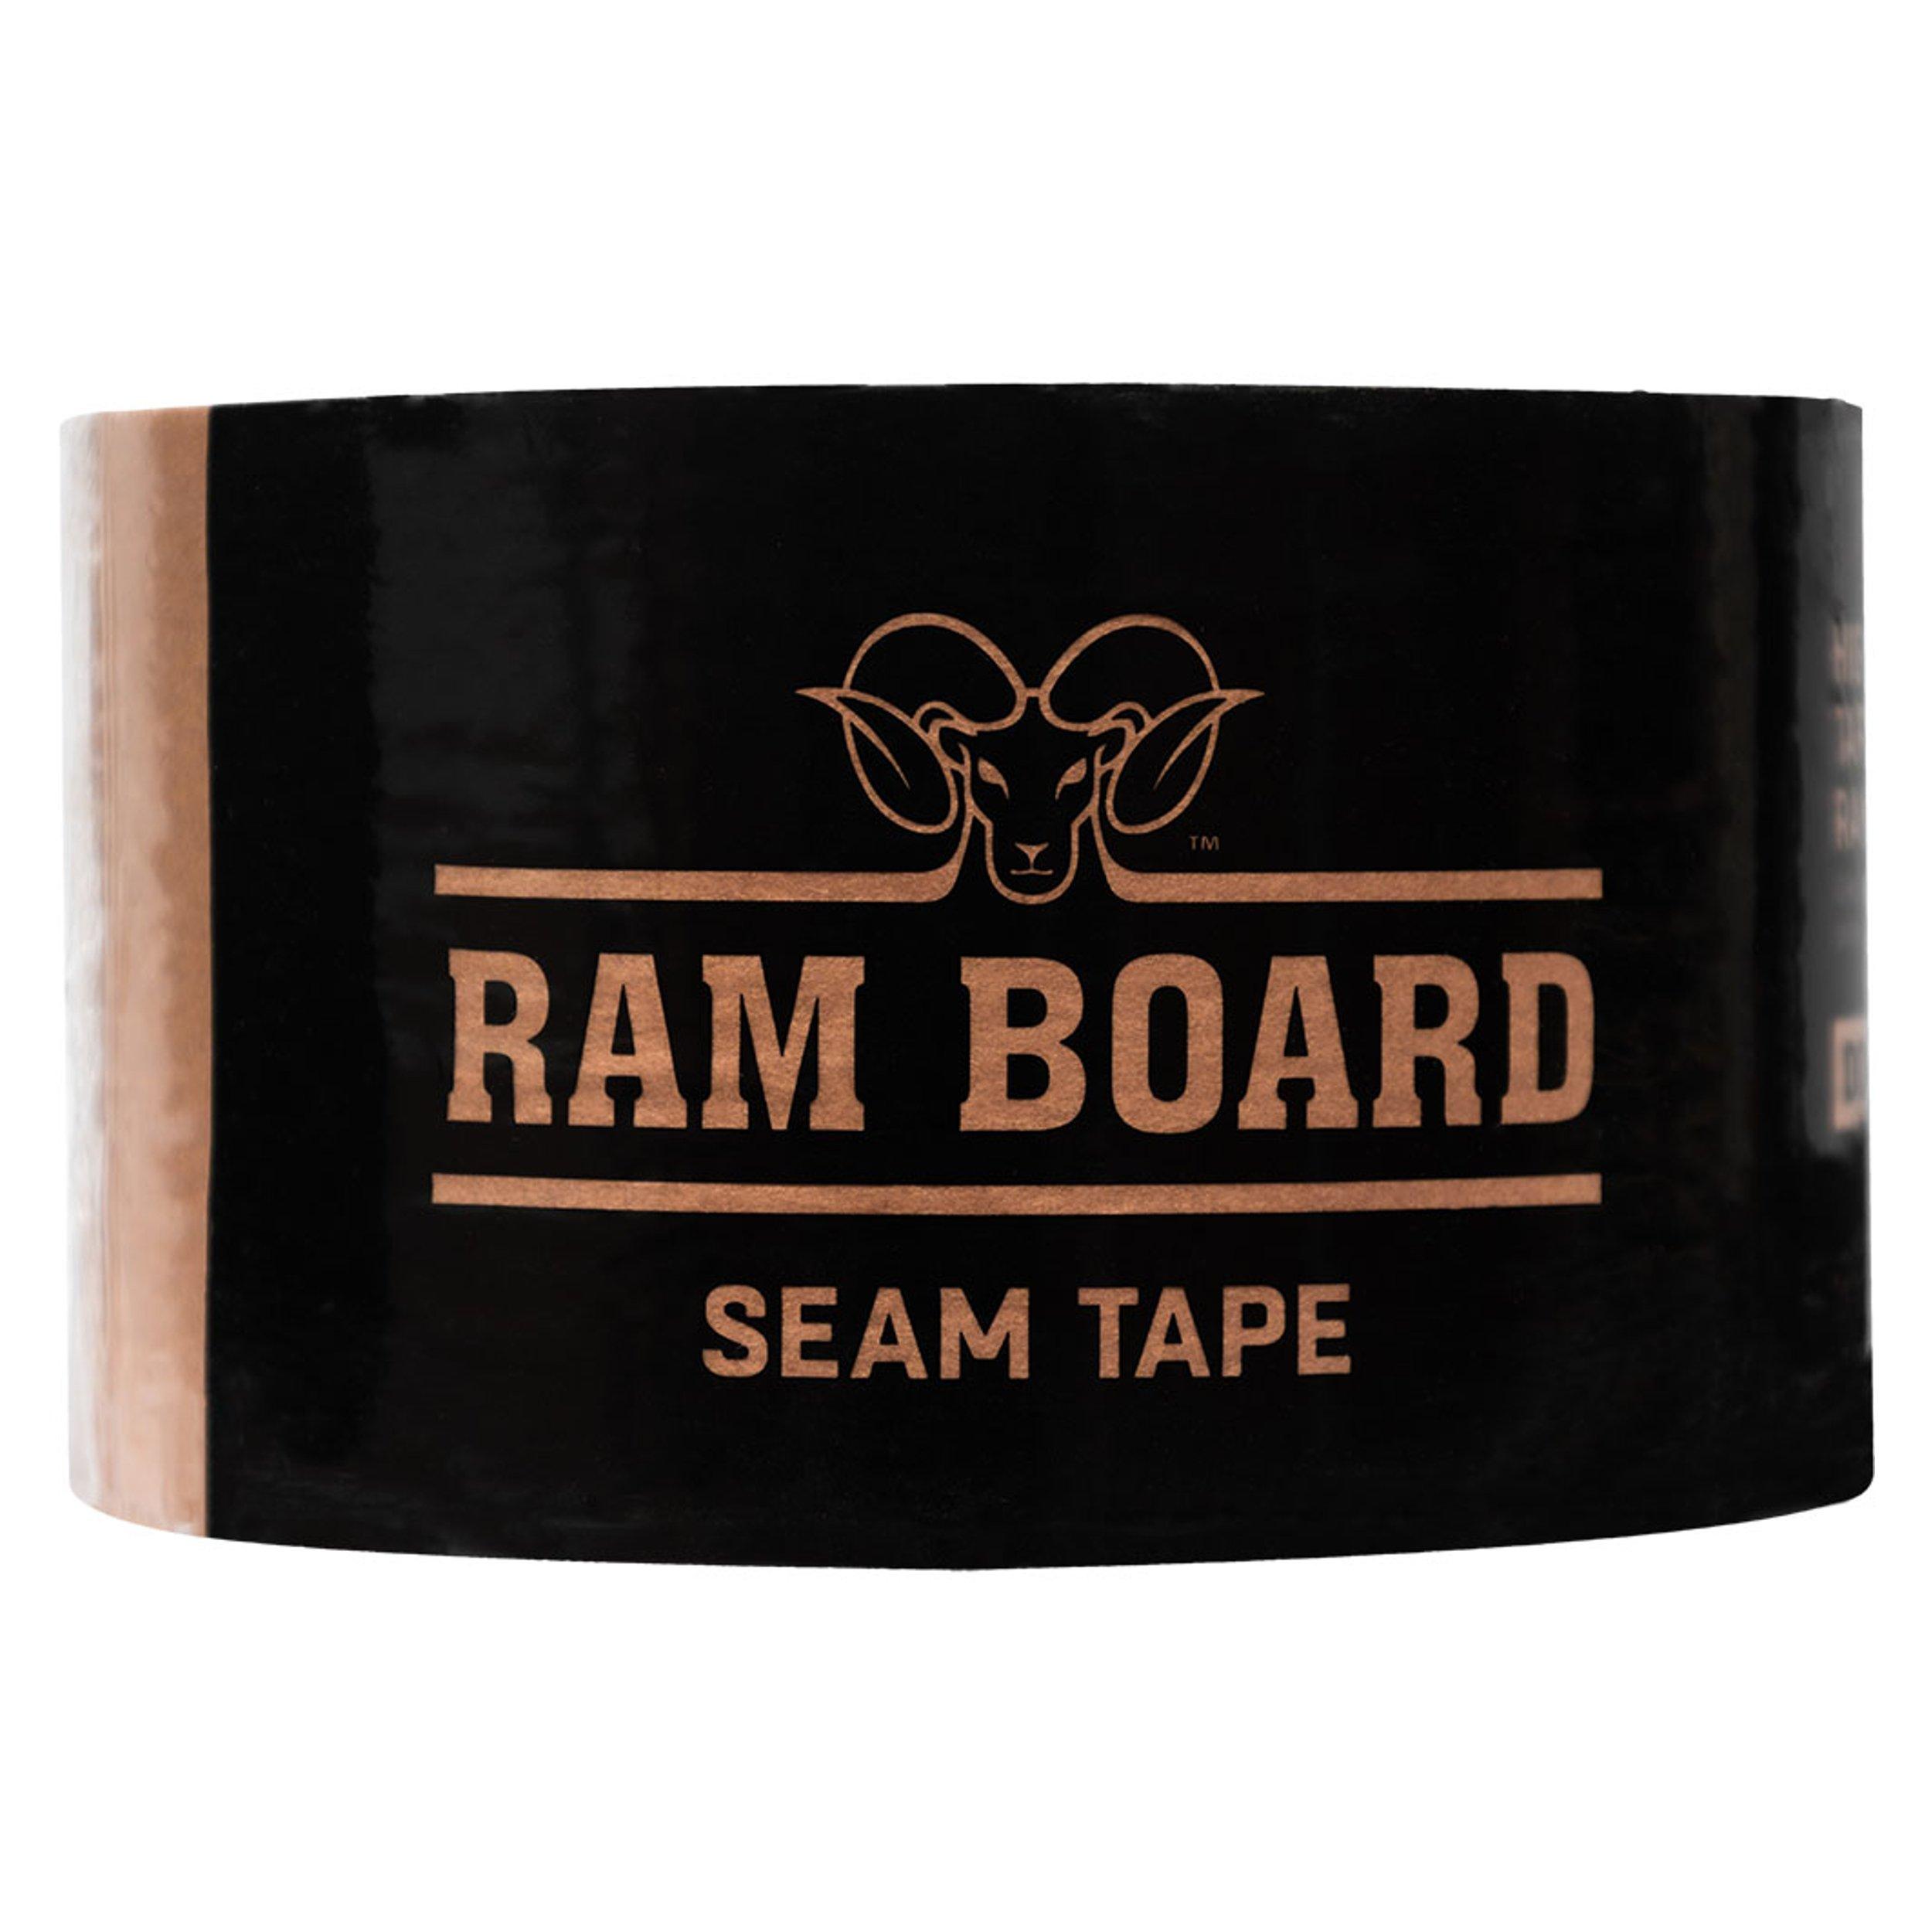 Ram Board Seam Tape